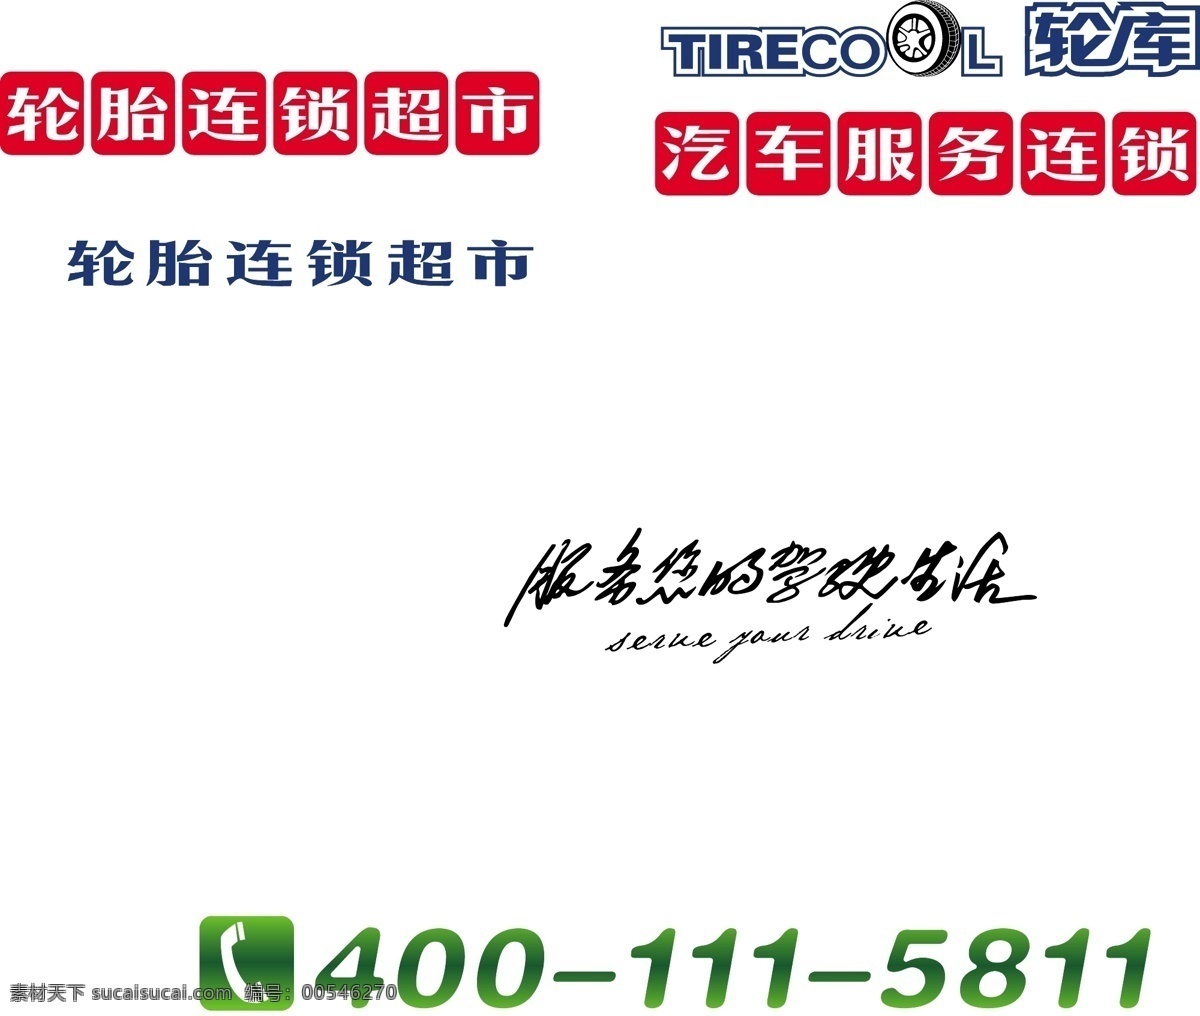 轮 库 logo 标识标志图标 标语 电话 红色 绿色 企业 标志 艺术字 矢量 轮库logo psd源文件 文件 源文件